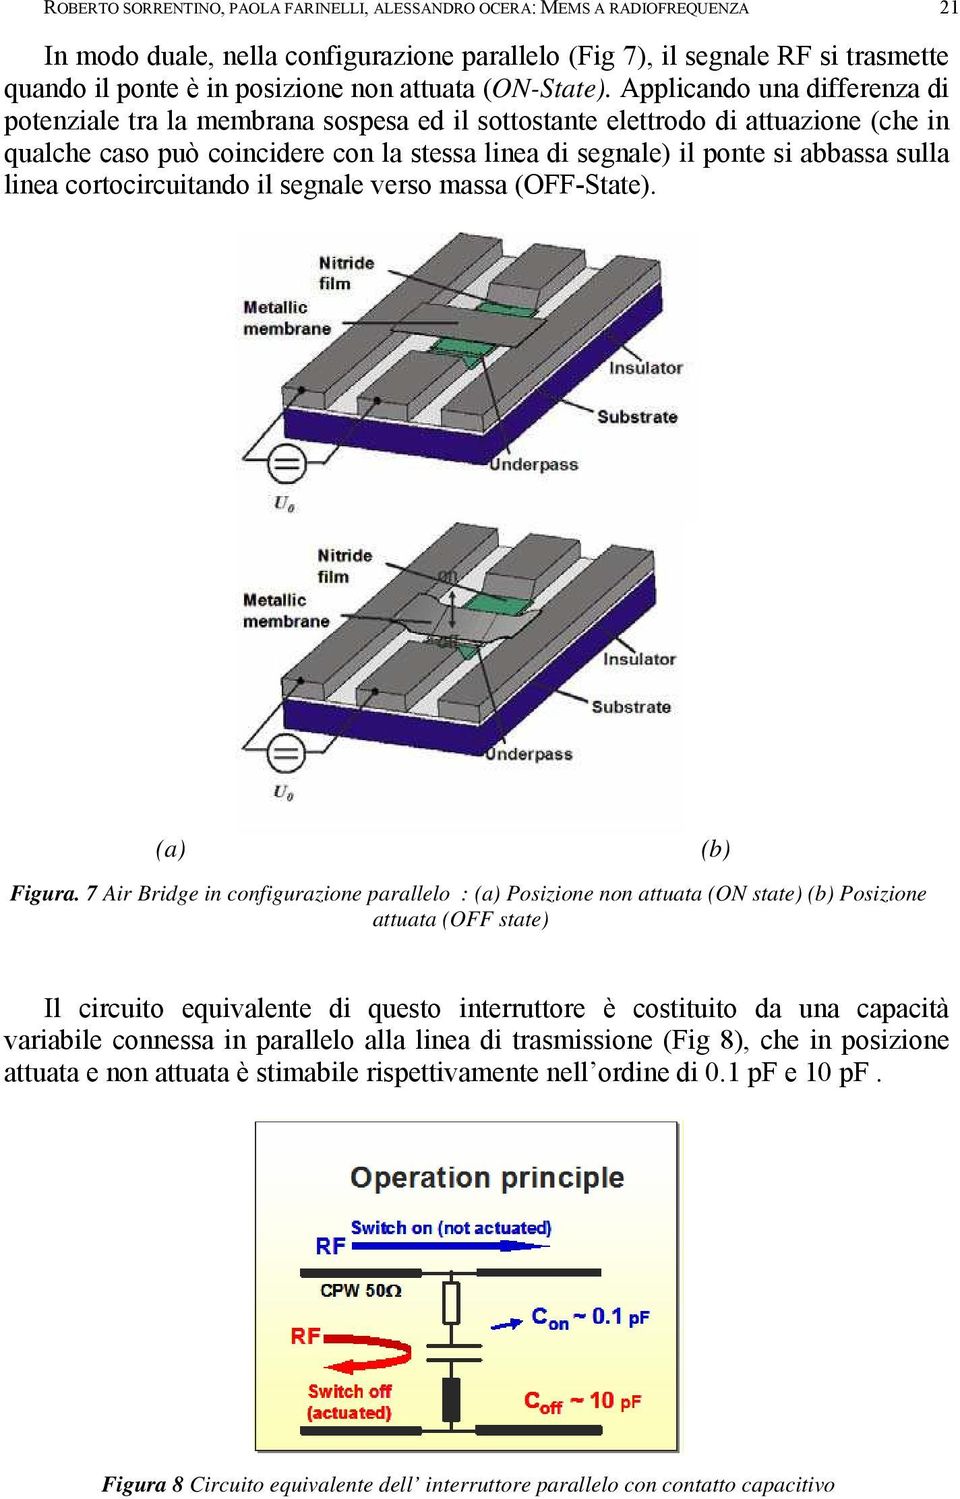 Applicando una differenza di potenziale tra la membrana sospesa ed il sottostante elettrodo di attuazione (che in qualche caso può coincidere con la stessa linea di segnale) il ponte si abbassa sulla